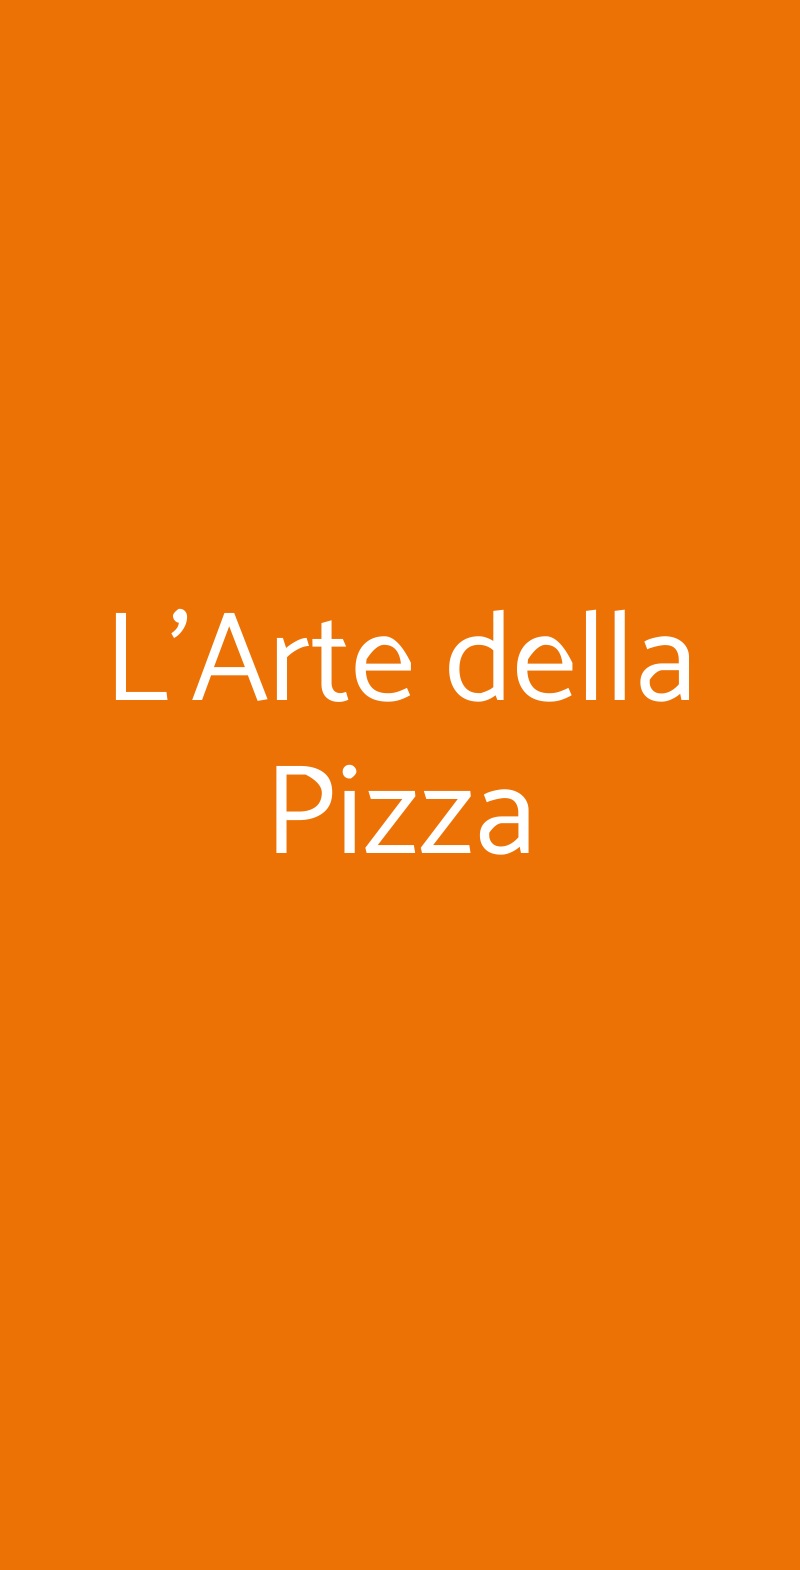 L'Arte della Pizza Napoli menù 1 pagina